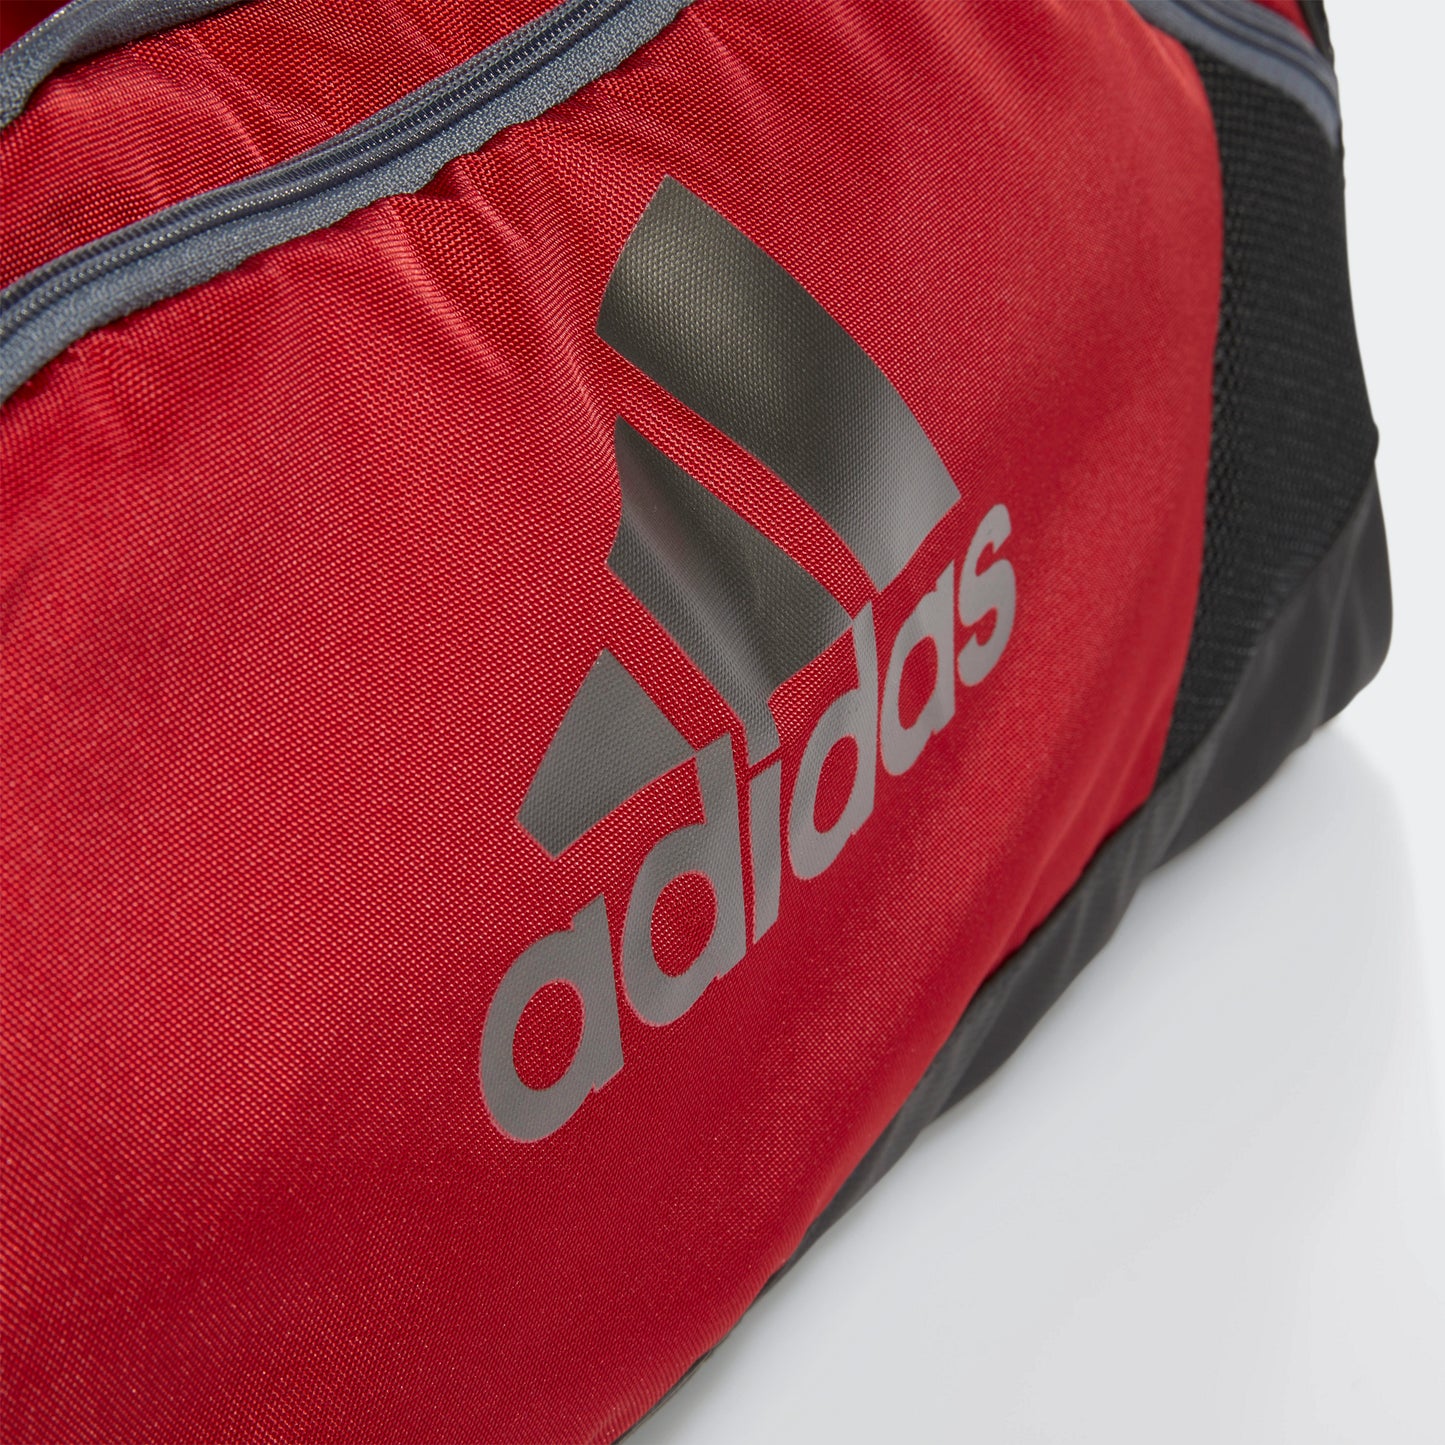 adidas TEAM ISSUE II Medium Duffel Bag | Red